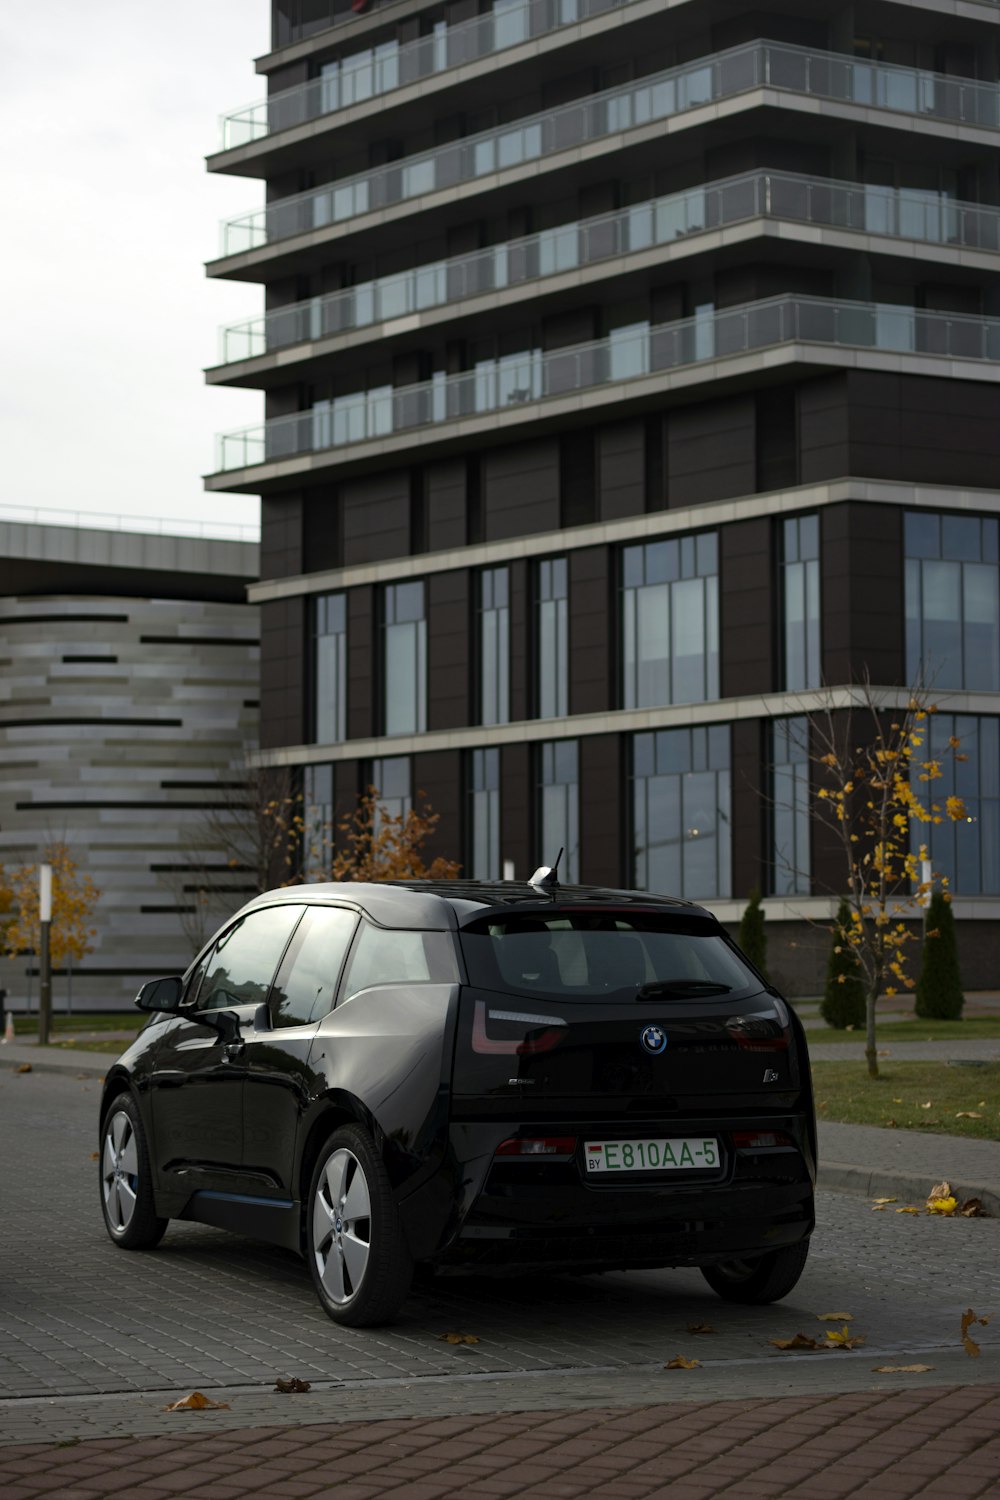 Un coche negro aparcado frente a un edificio